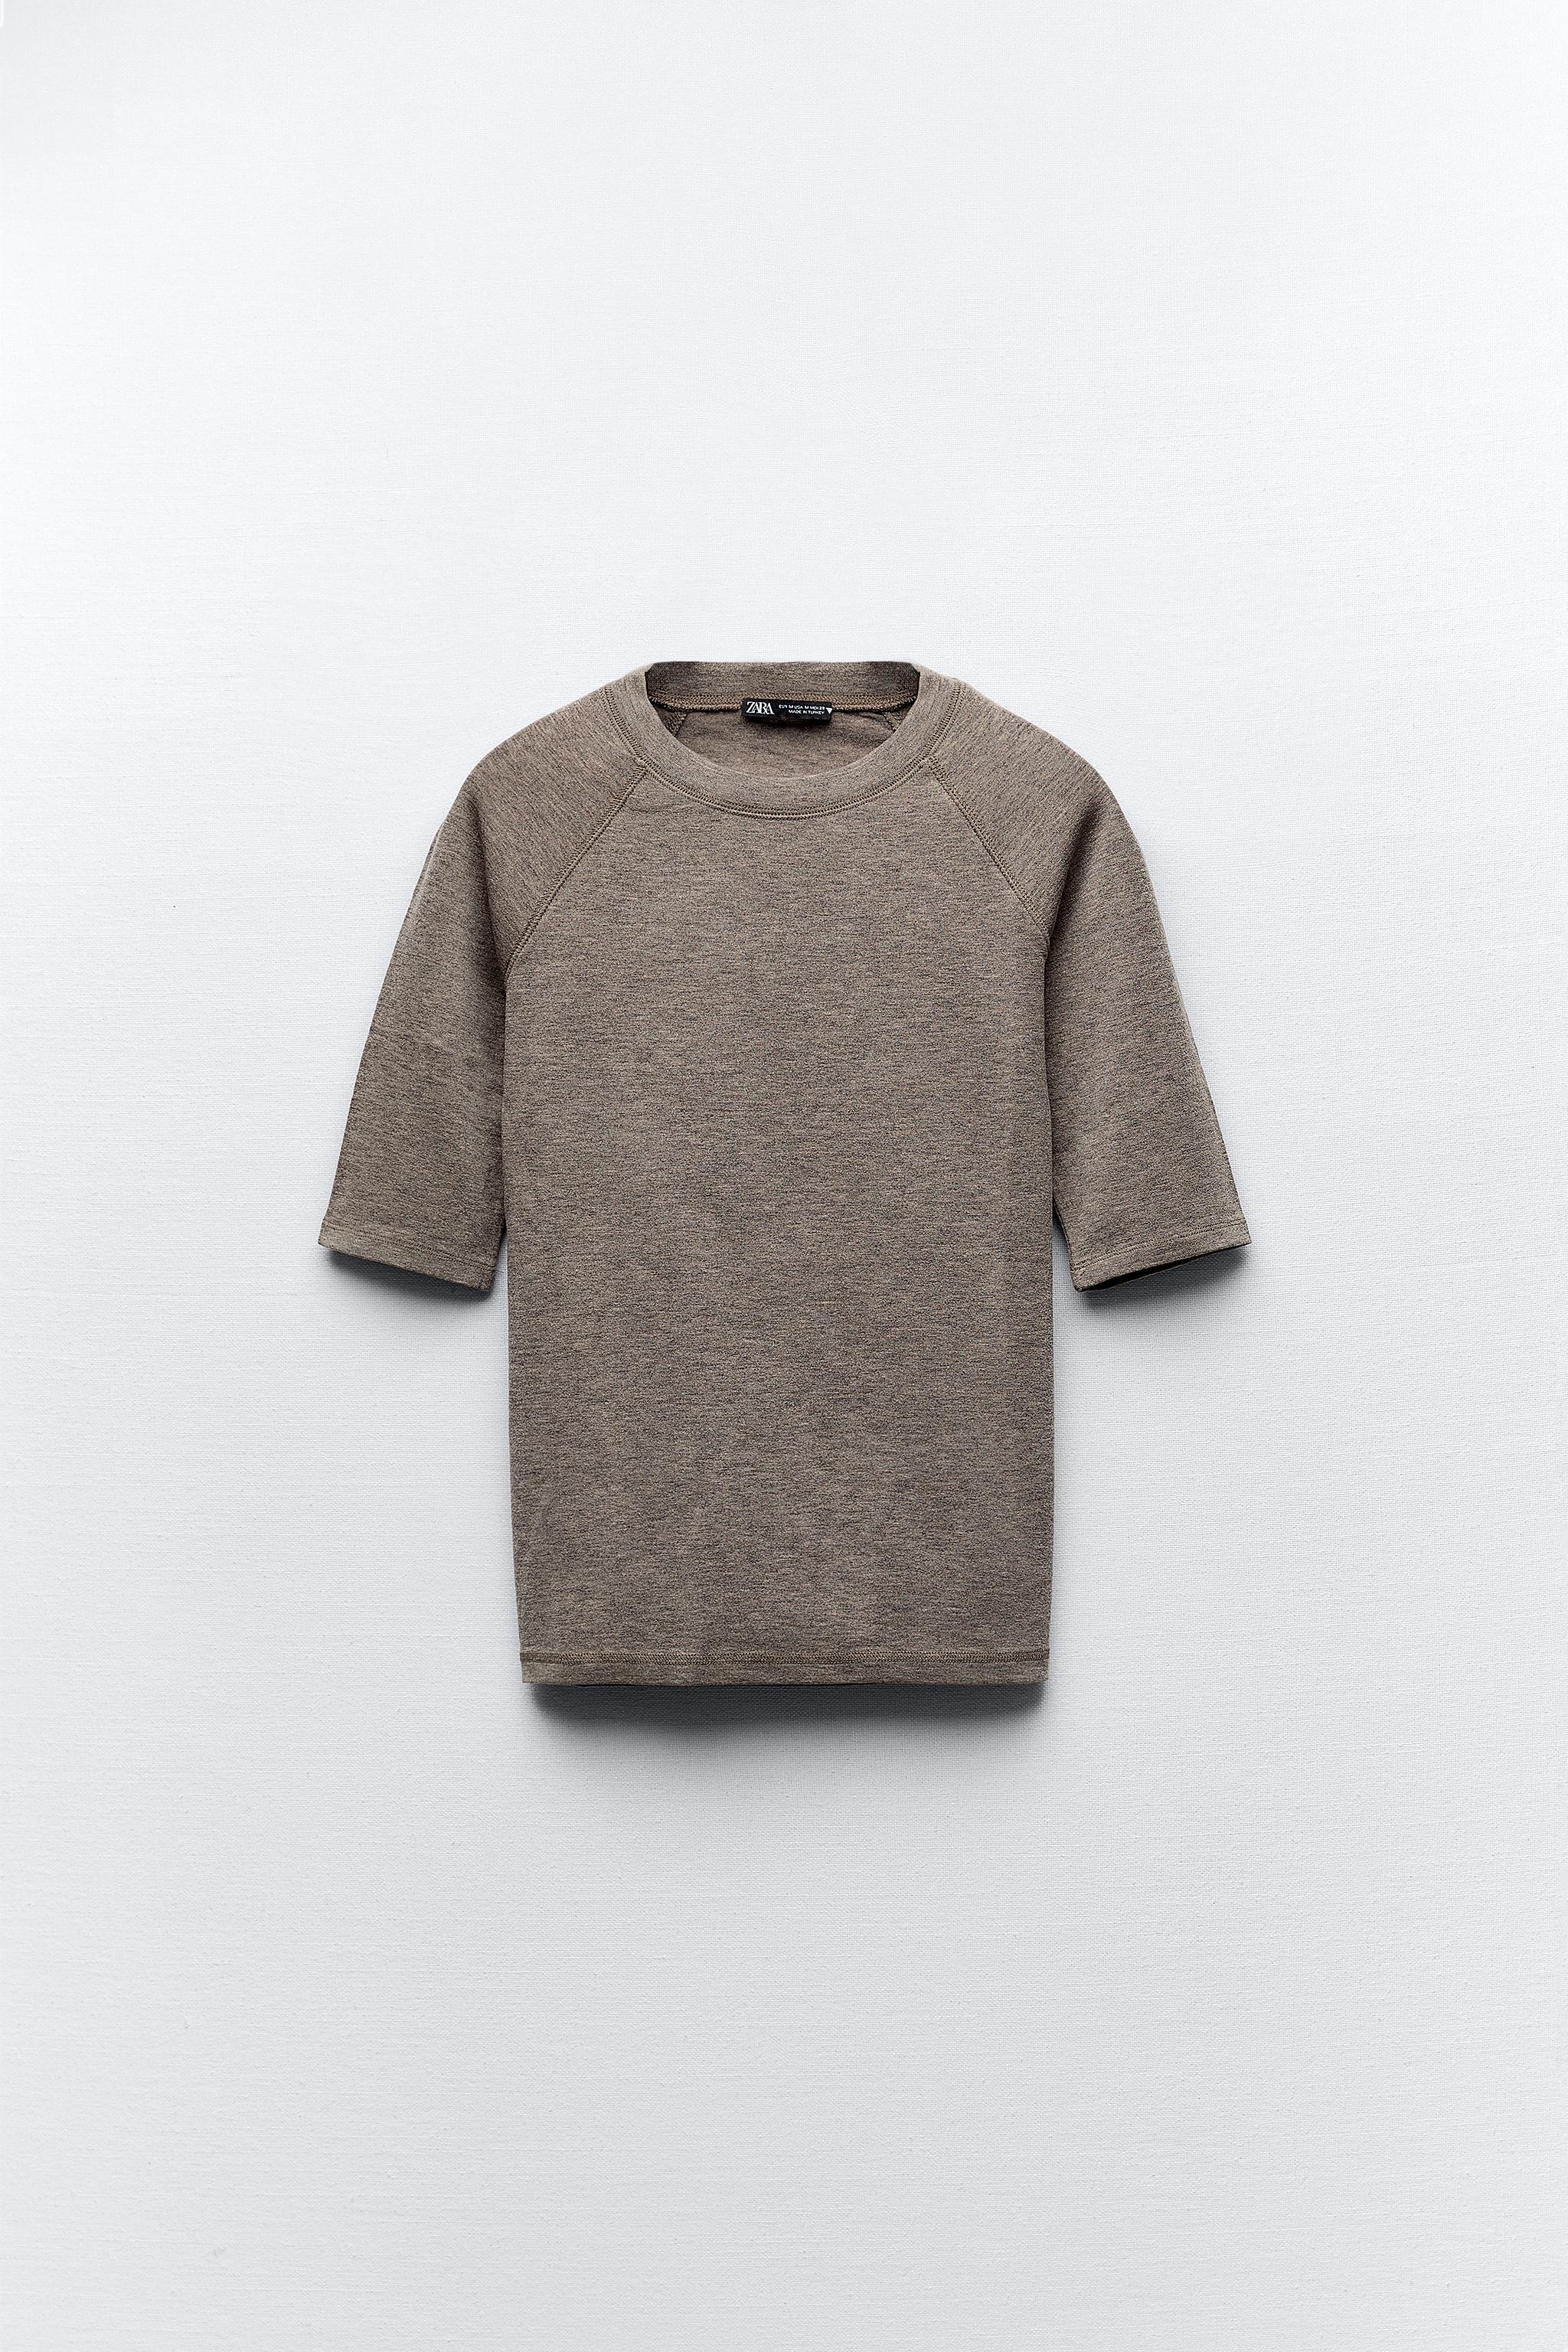 メランジグレーTシャツ - ミンクマール | ZARA Japan / 日本